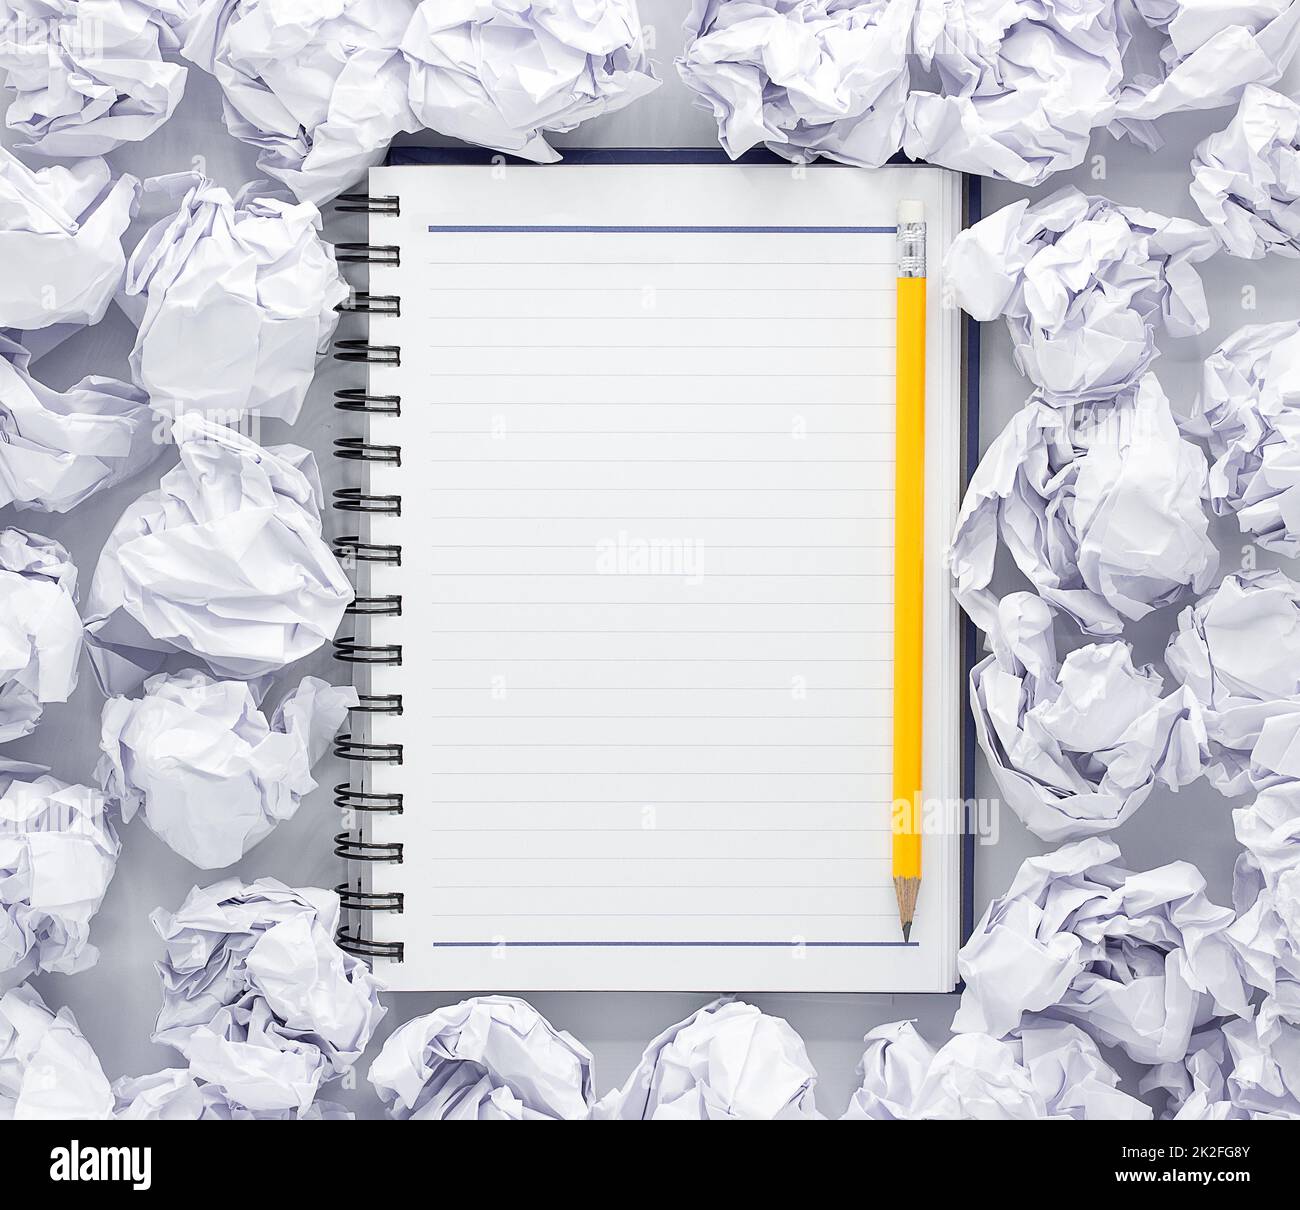 Weißes Notizblock auf weißem Hintergrund. Um die Notizblöcke liegt viel zerknittert Papier, Copy Space Stockfoto